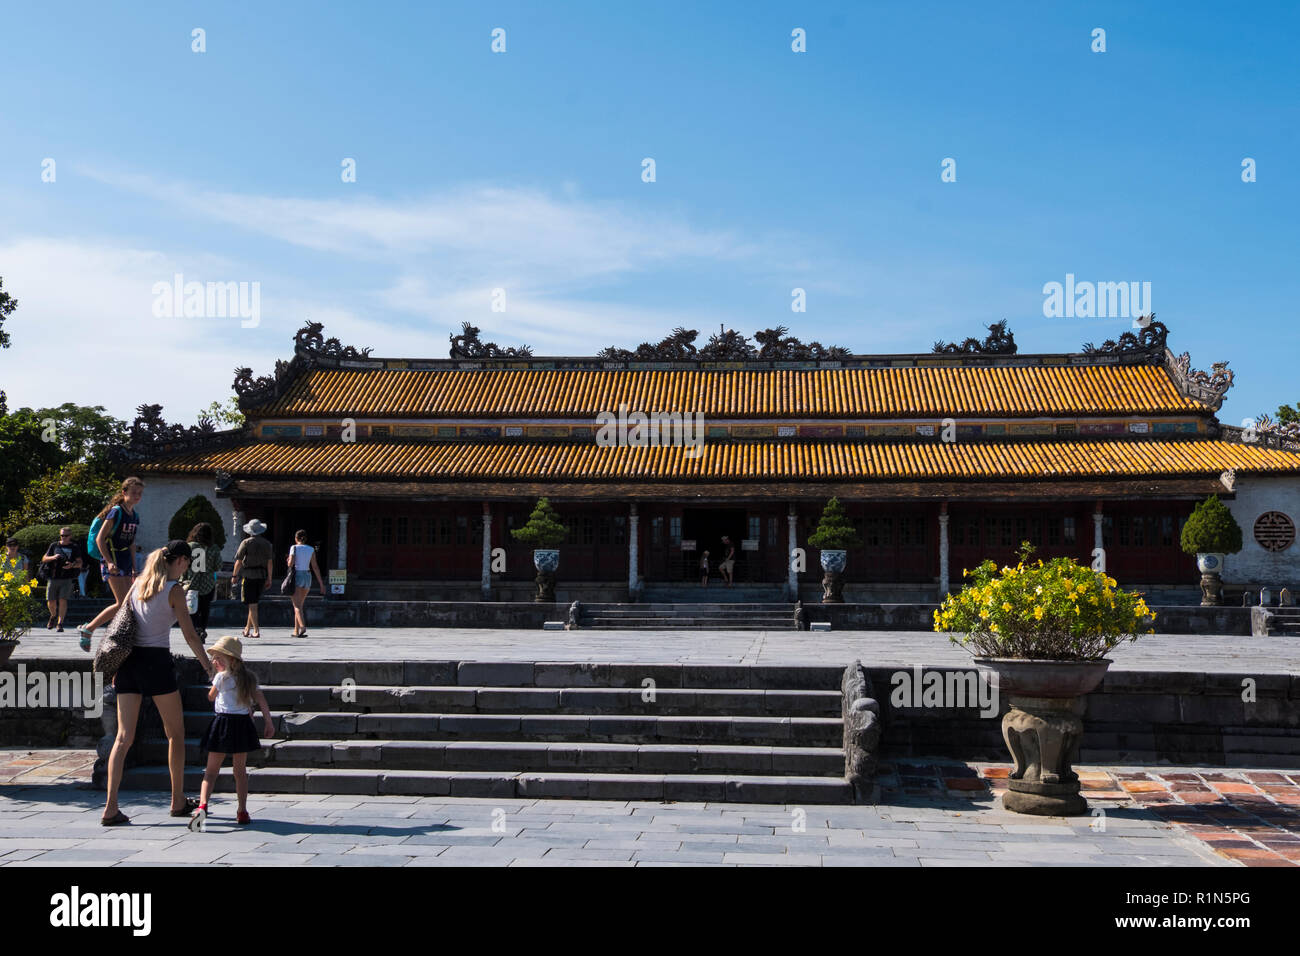 Le Palais Thai Hoa à l'intérieur de la citadelle fortifiée Kinh Thanh la Ville Impériale Hue Vietnam Asie Hoang thanh Site du patrimoine mondial de l'UNESCO Banque D'Images